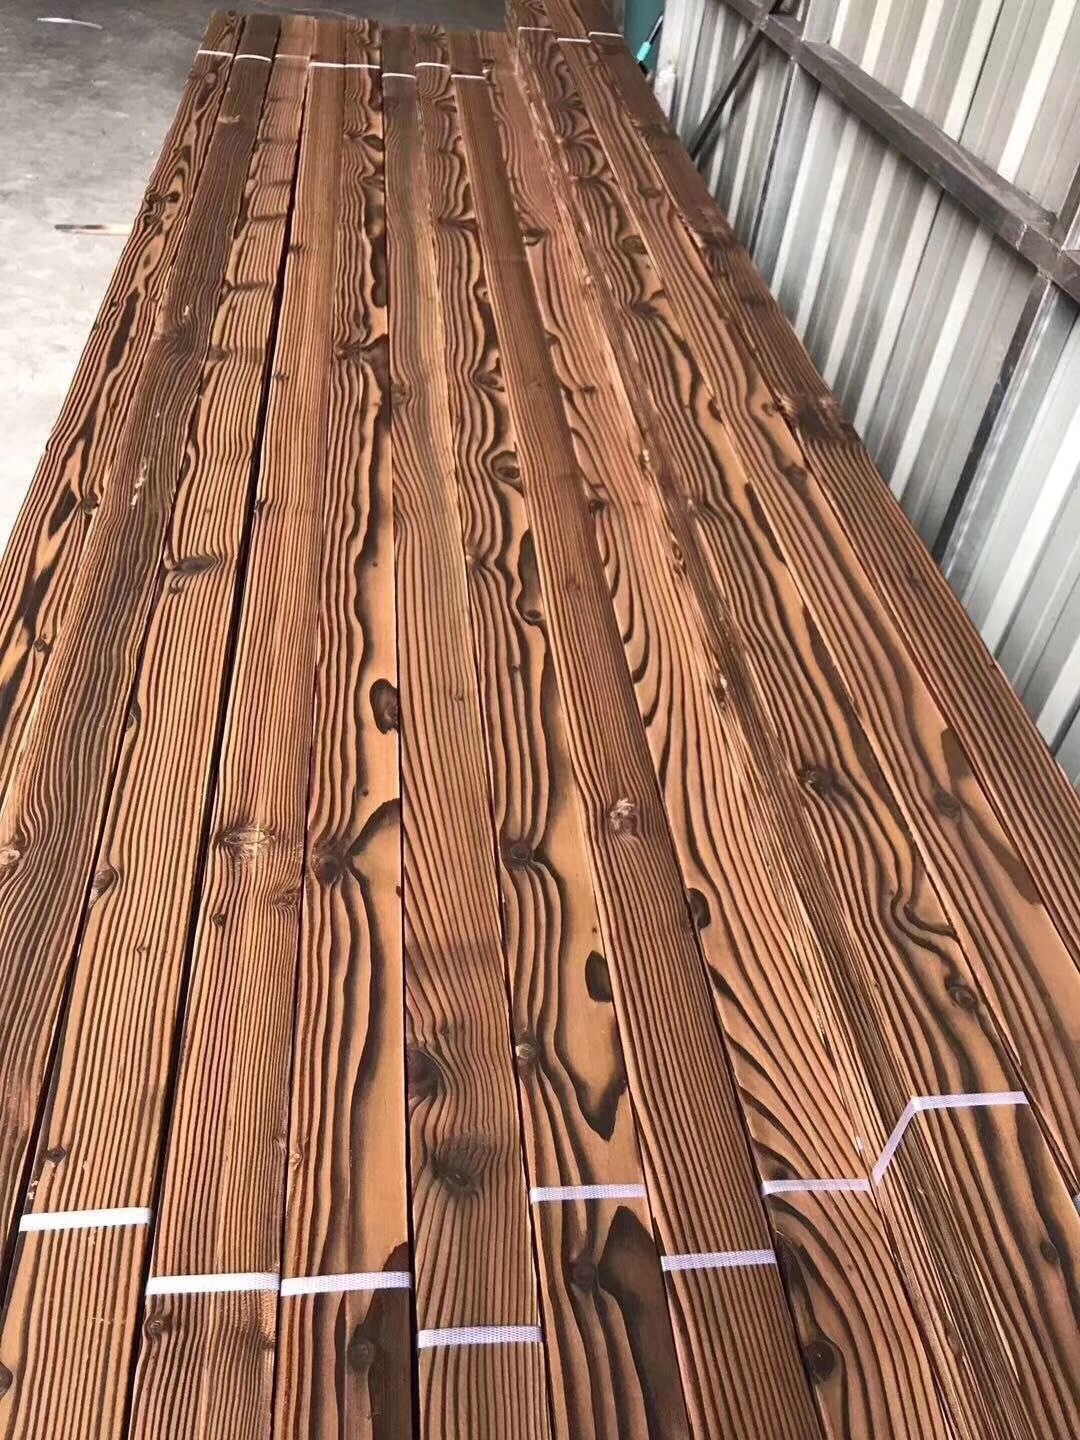 深度碳化木户外墙板 吊顶 赤松 芬兰松深度碳化木-阿里巴巴